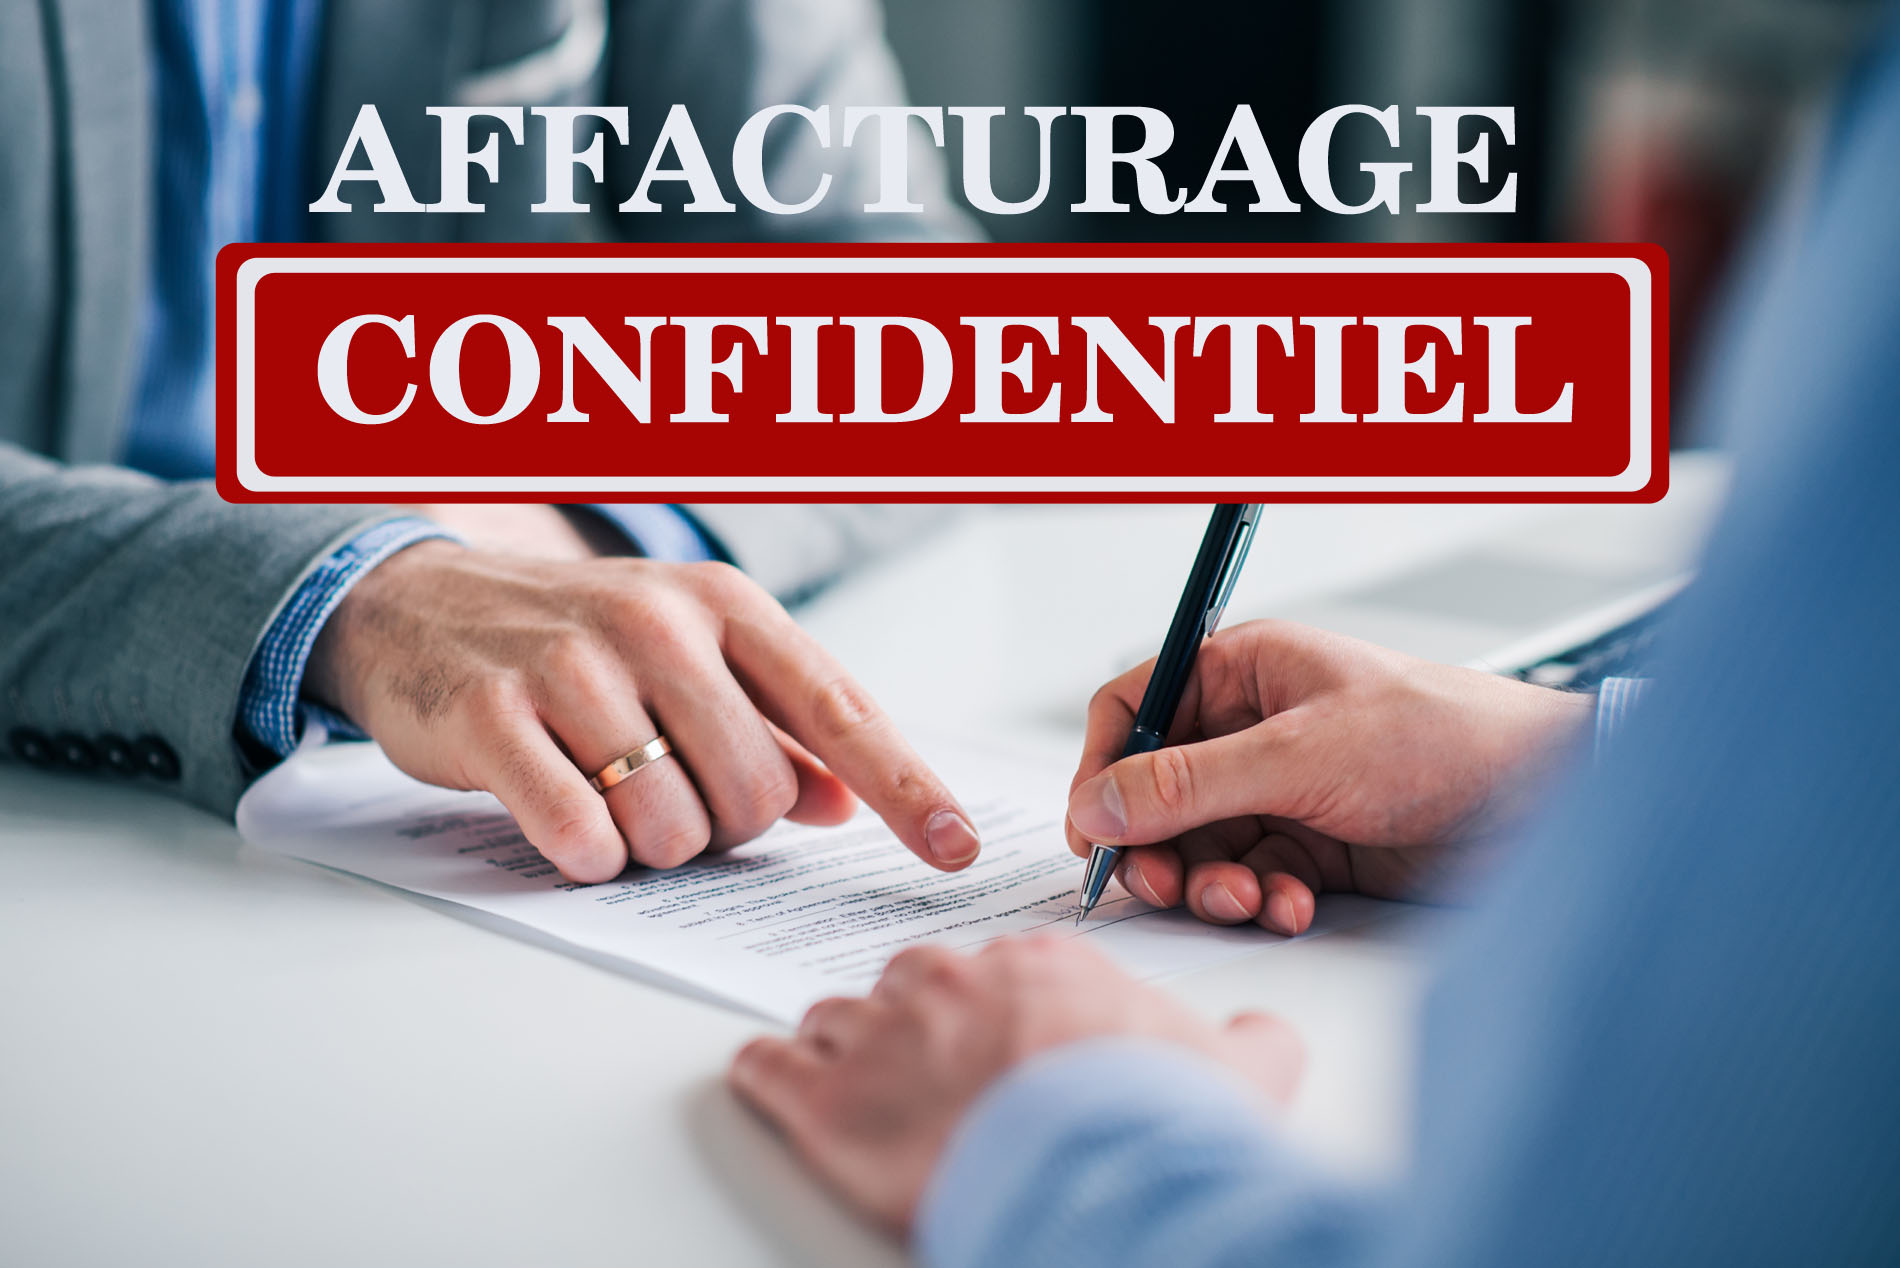 Contrat d'affacturage confidentiel